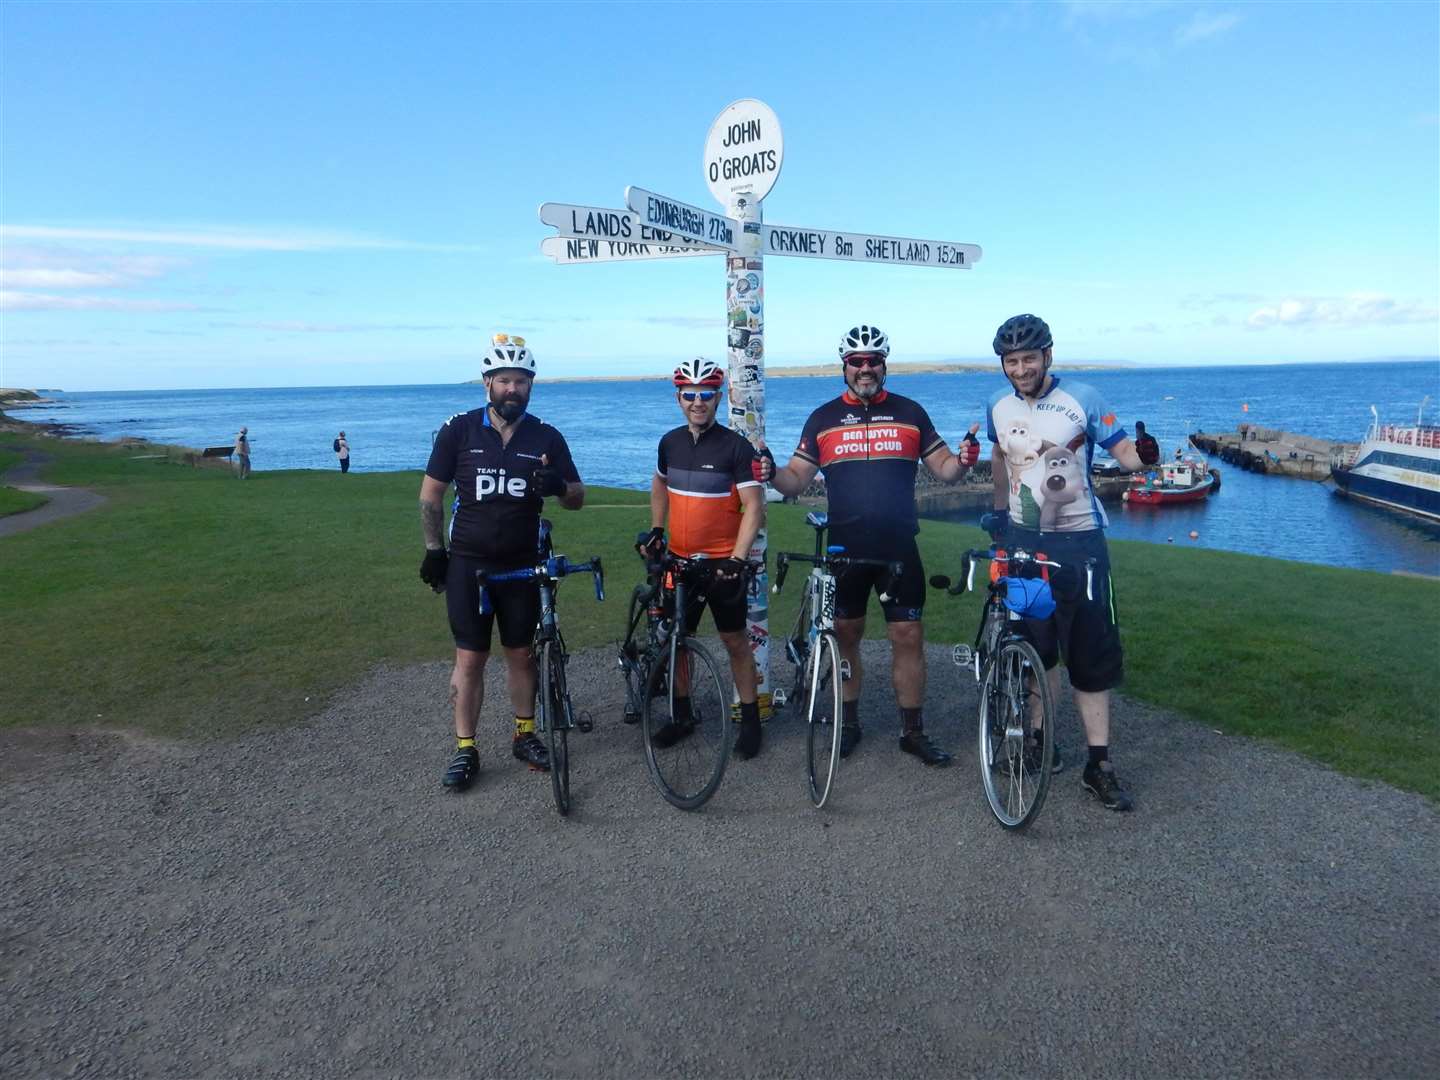 John (right) at John O'Groats during his North Coast 500 cycle tour.